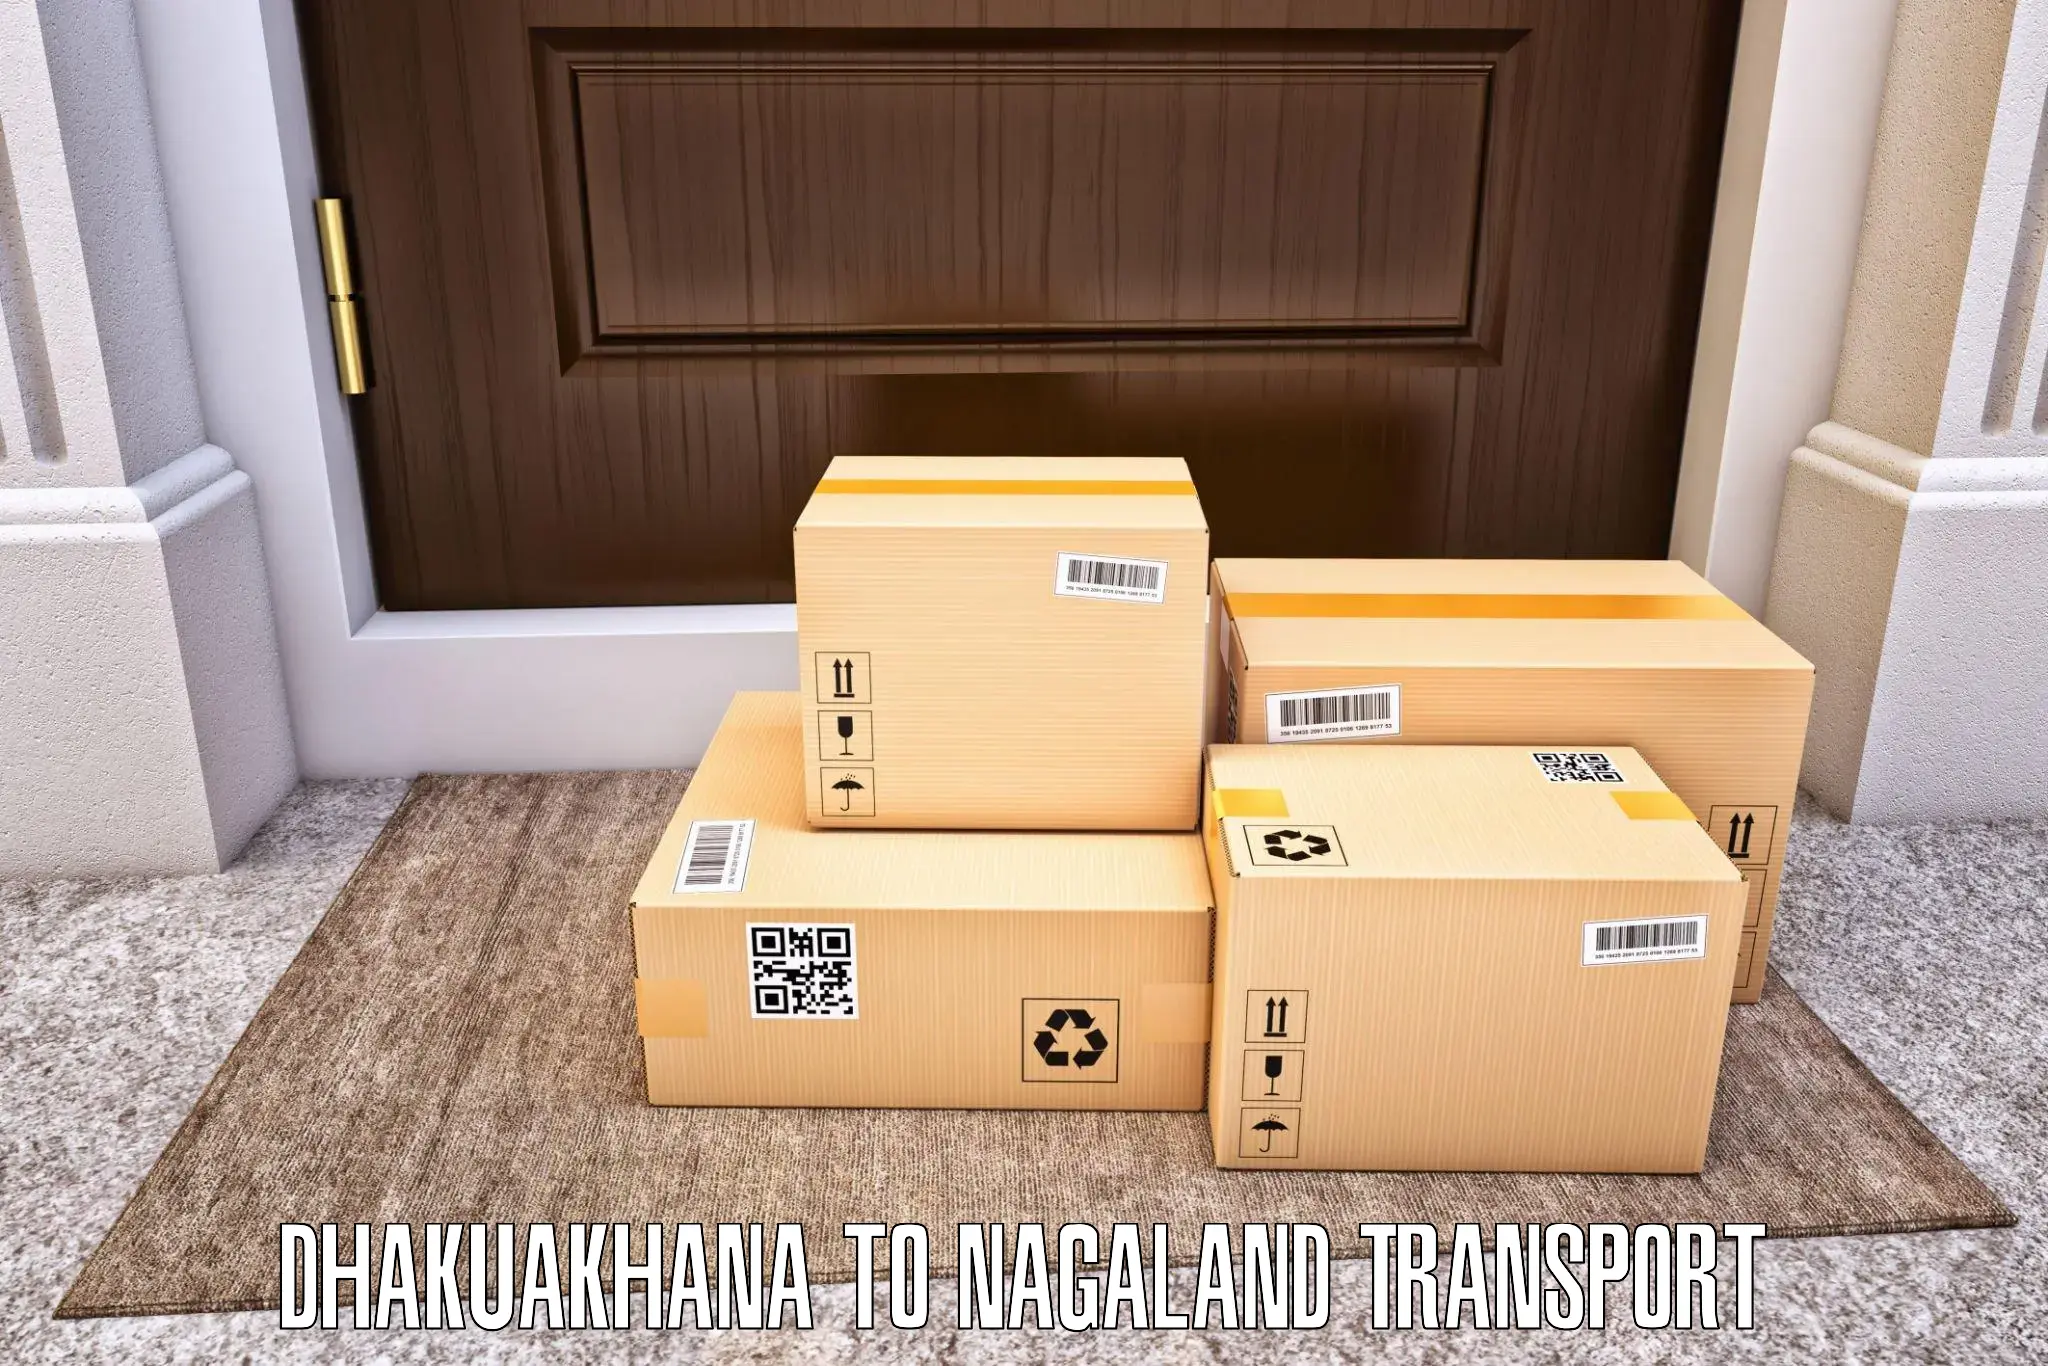 Luggage transport services Dhakuakhana to Nagaland